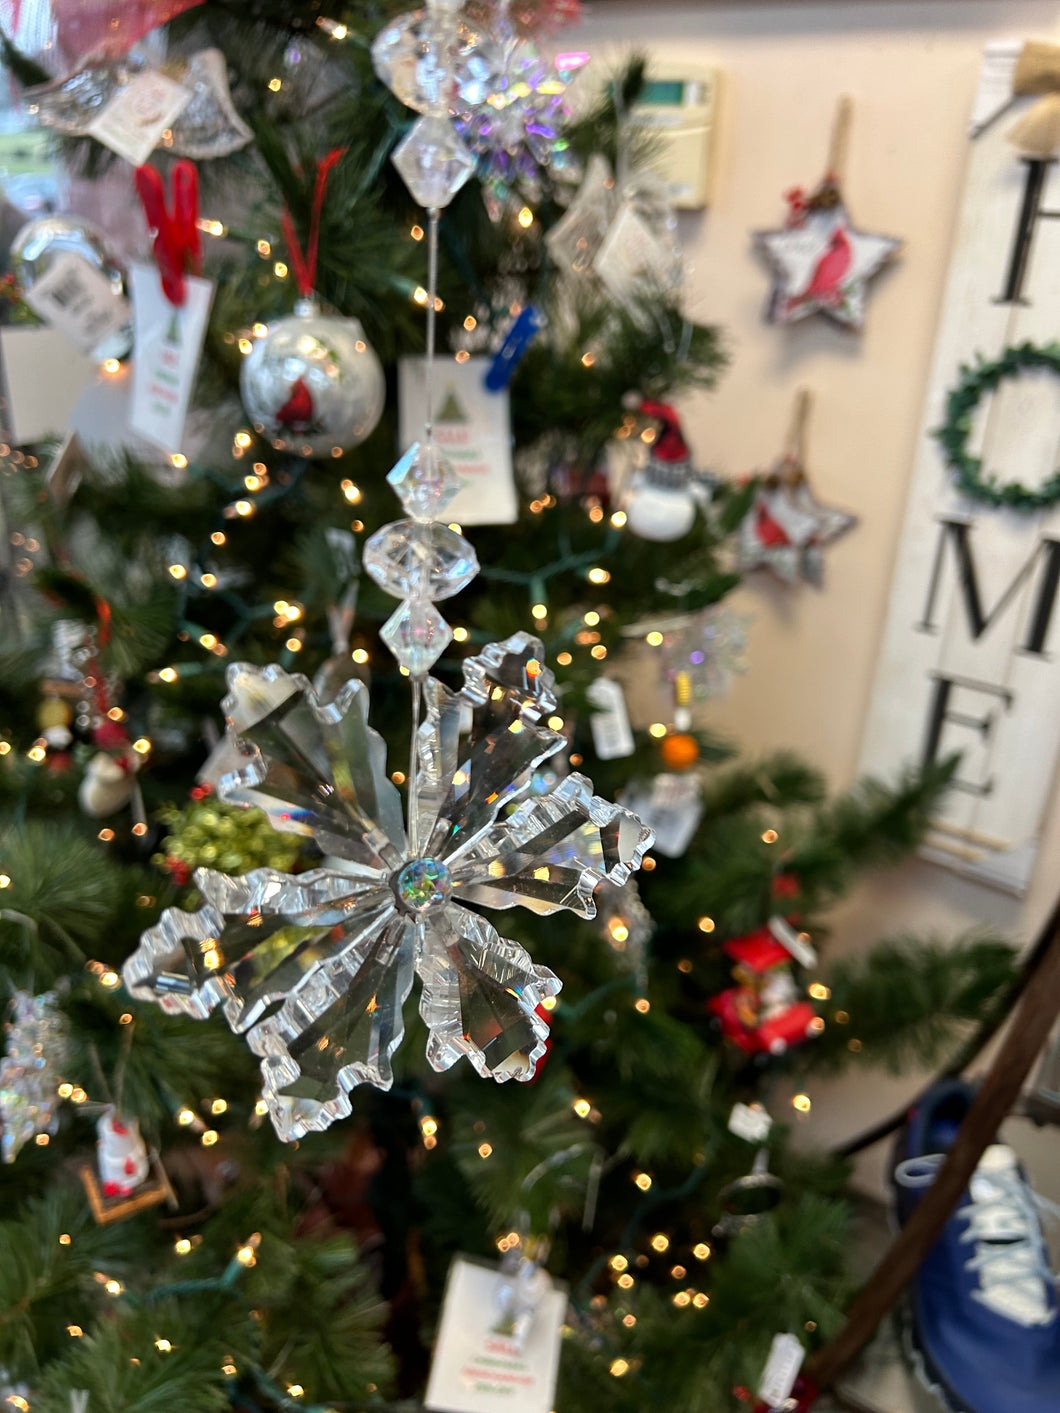 Glimmer Snowflake Sun catcher or Ornament